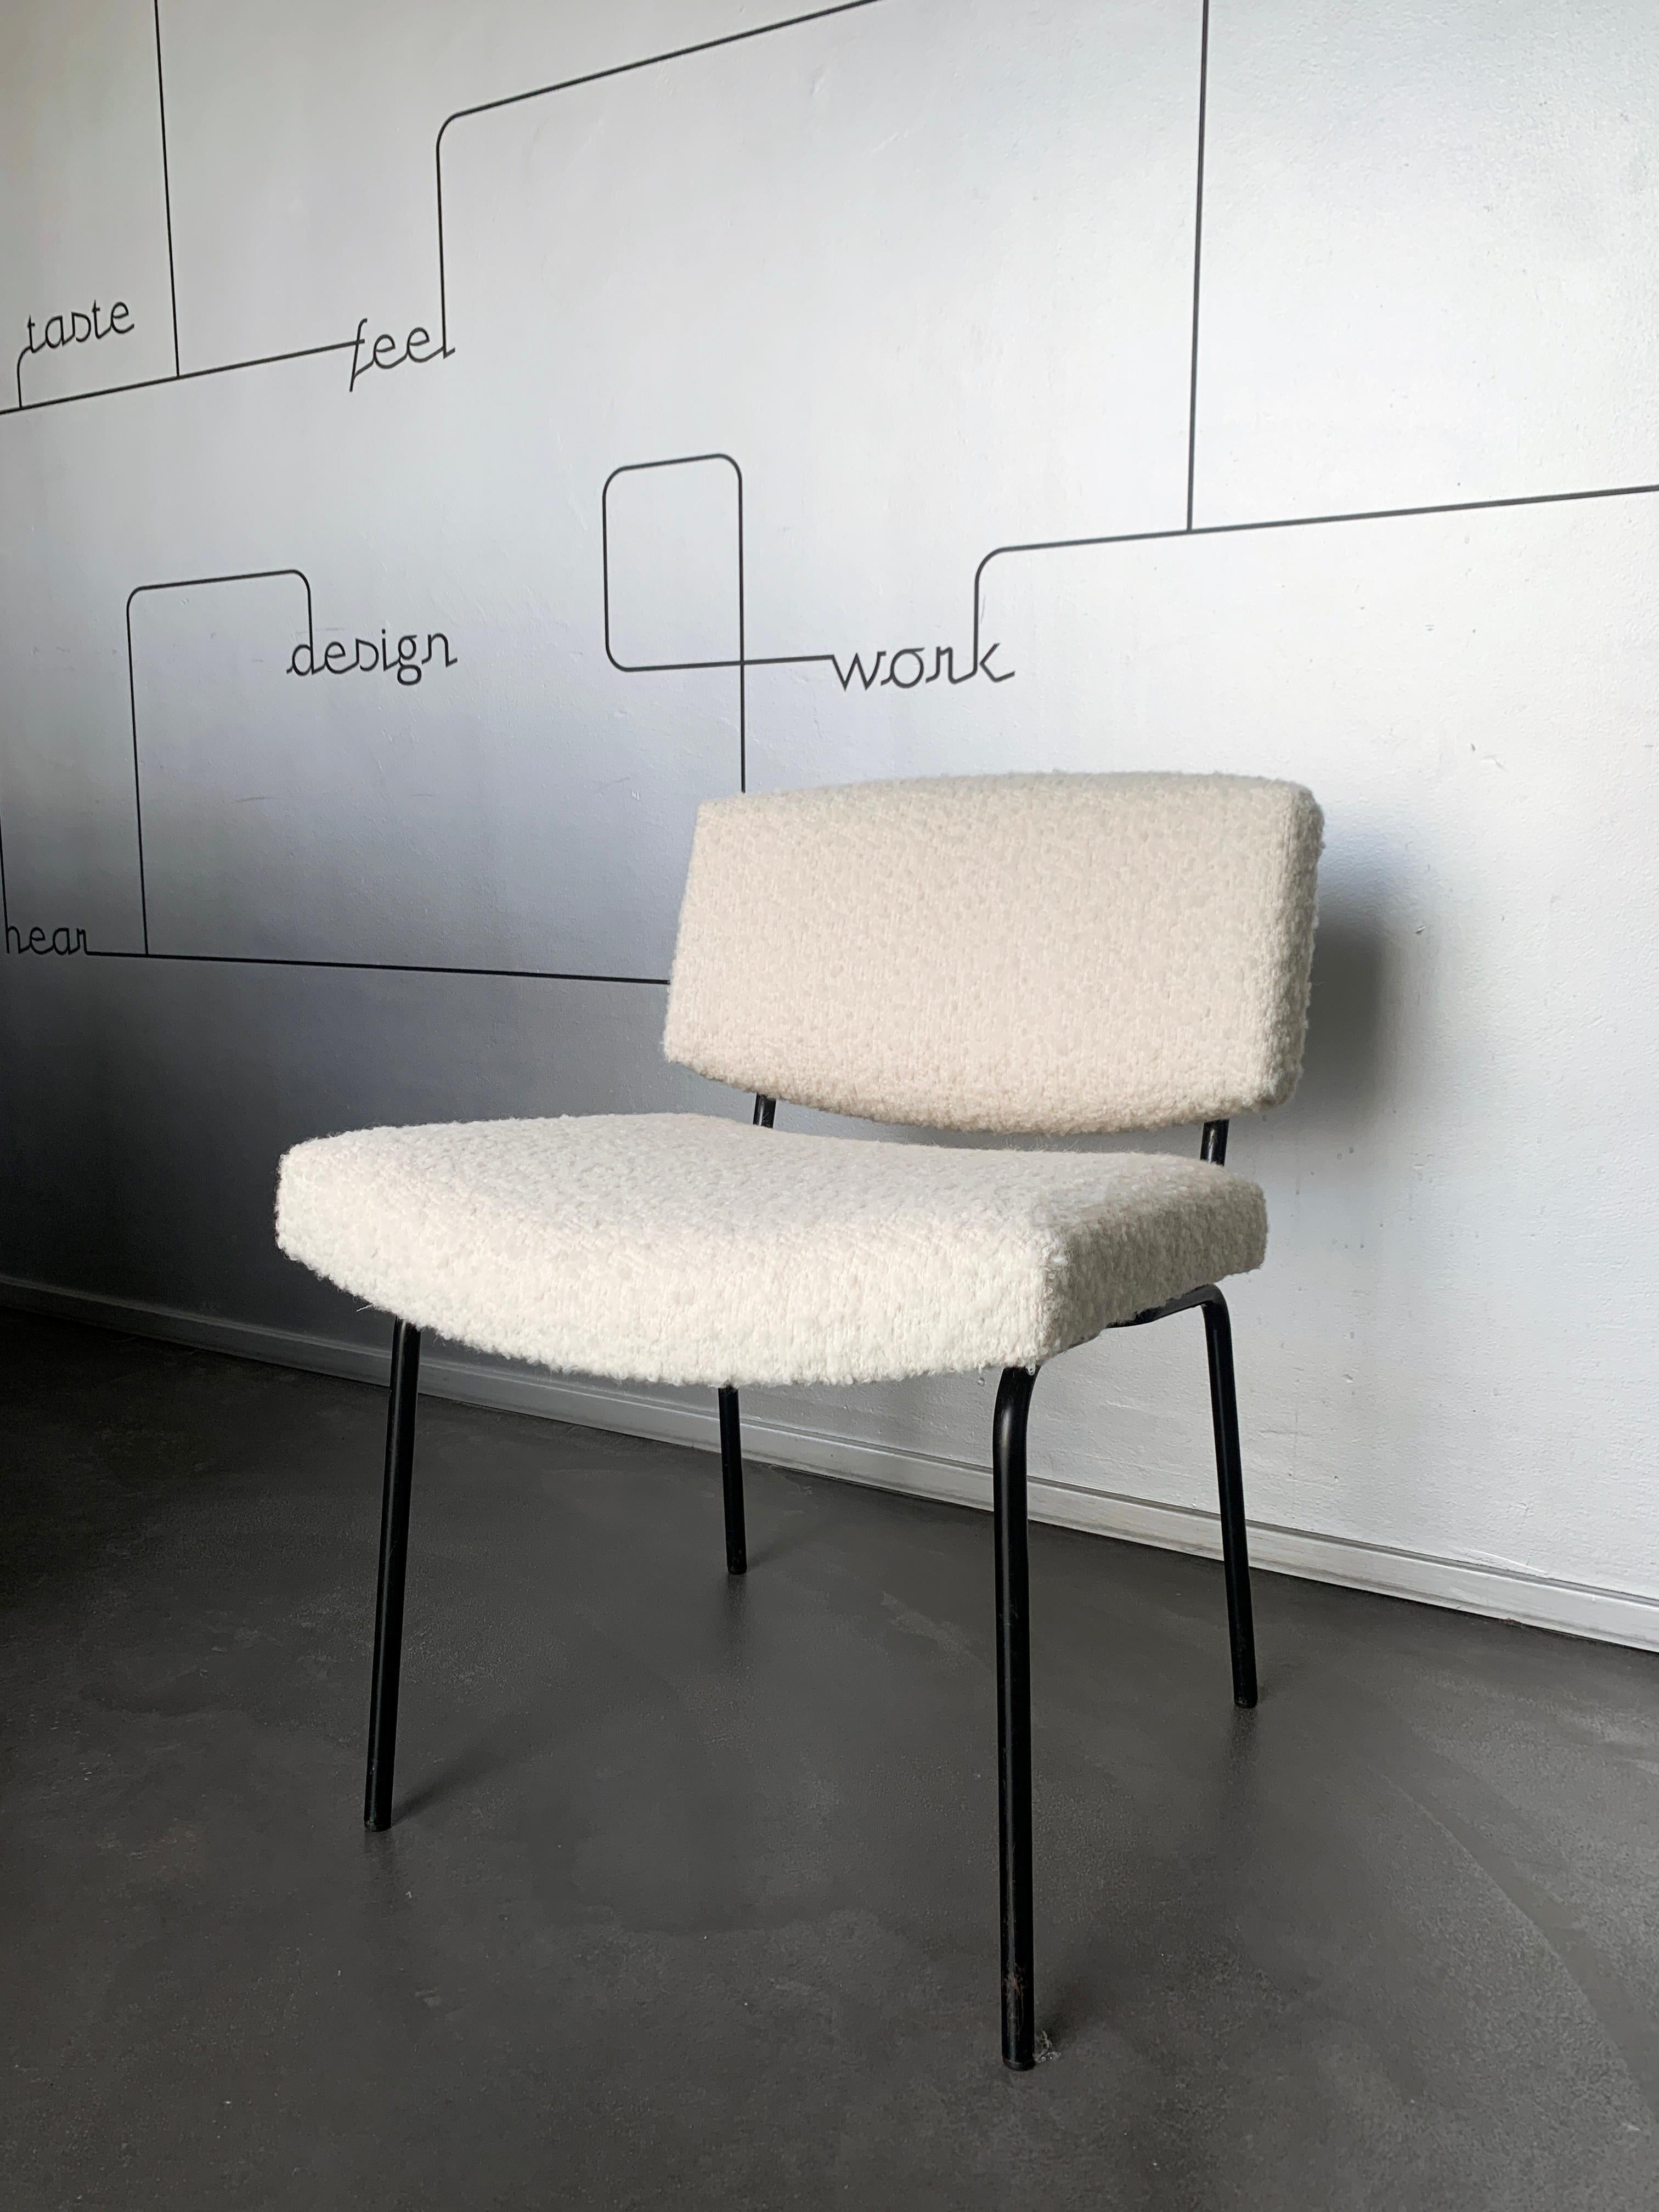 Pierre Guariche a conçu la chaise conseil pour le fabricant de meubles belge Meurop dans les années 1960. 

La chaise a été récemment recouverte d'un tissu bouclette blanc chaud.

De 1960 à 1968, Pierre Guariche a été directeur artistique de la